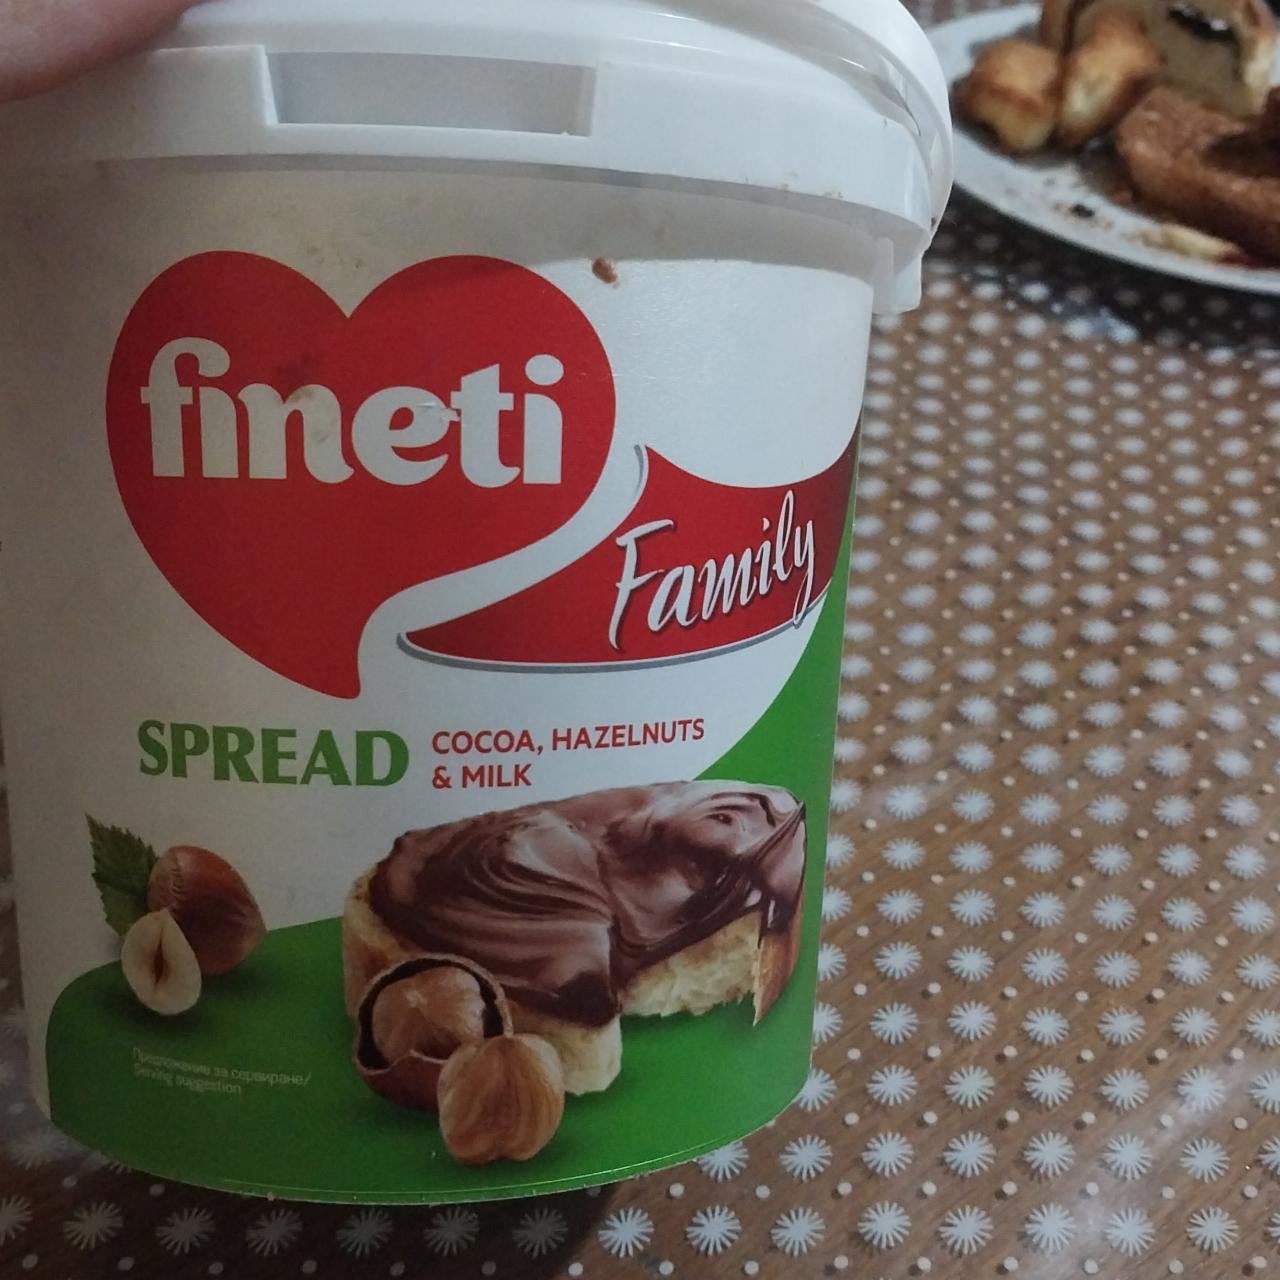 Фото - молочно-фундучный спред с какао Fineti